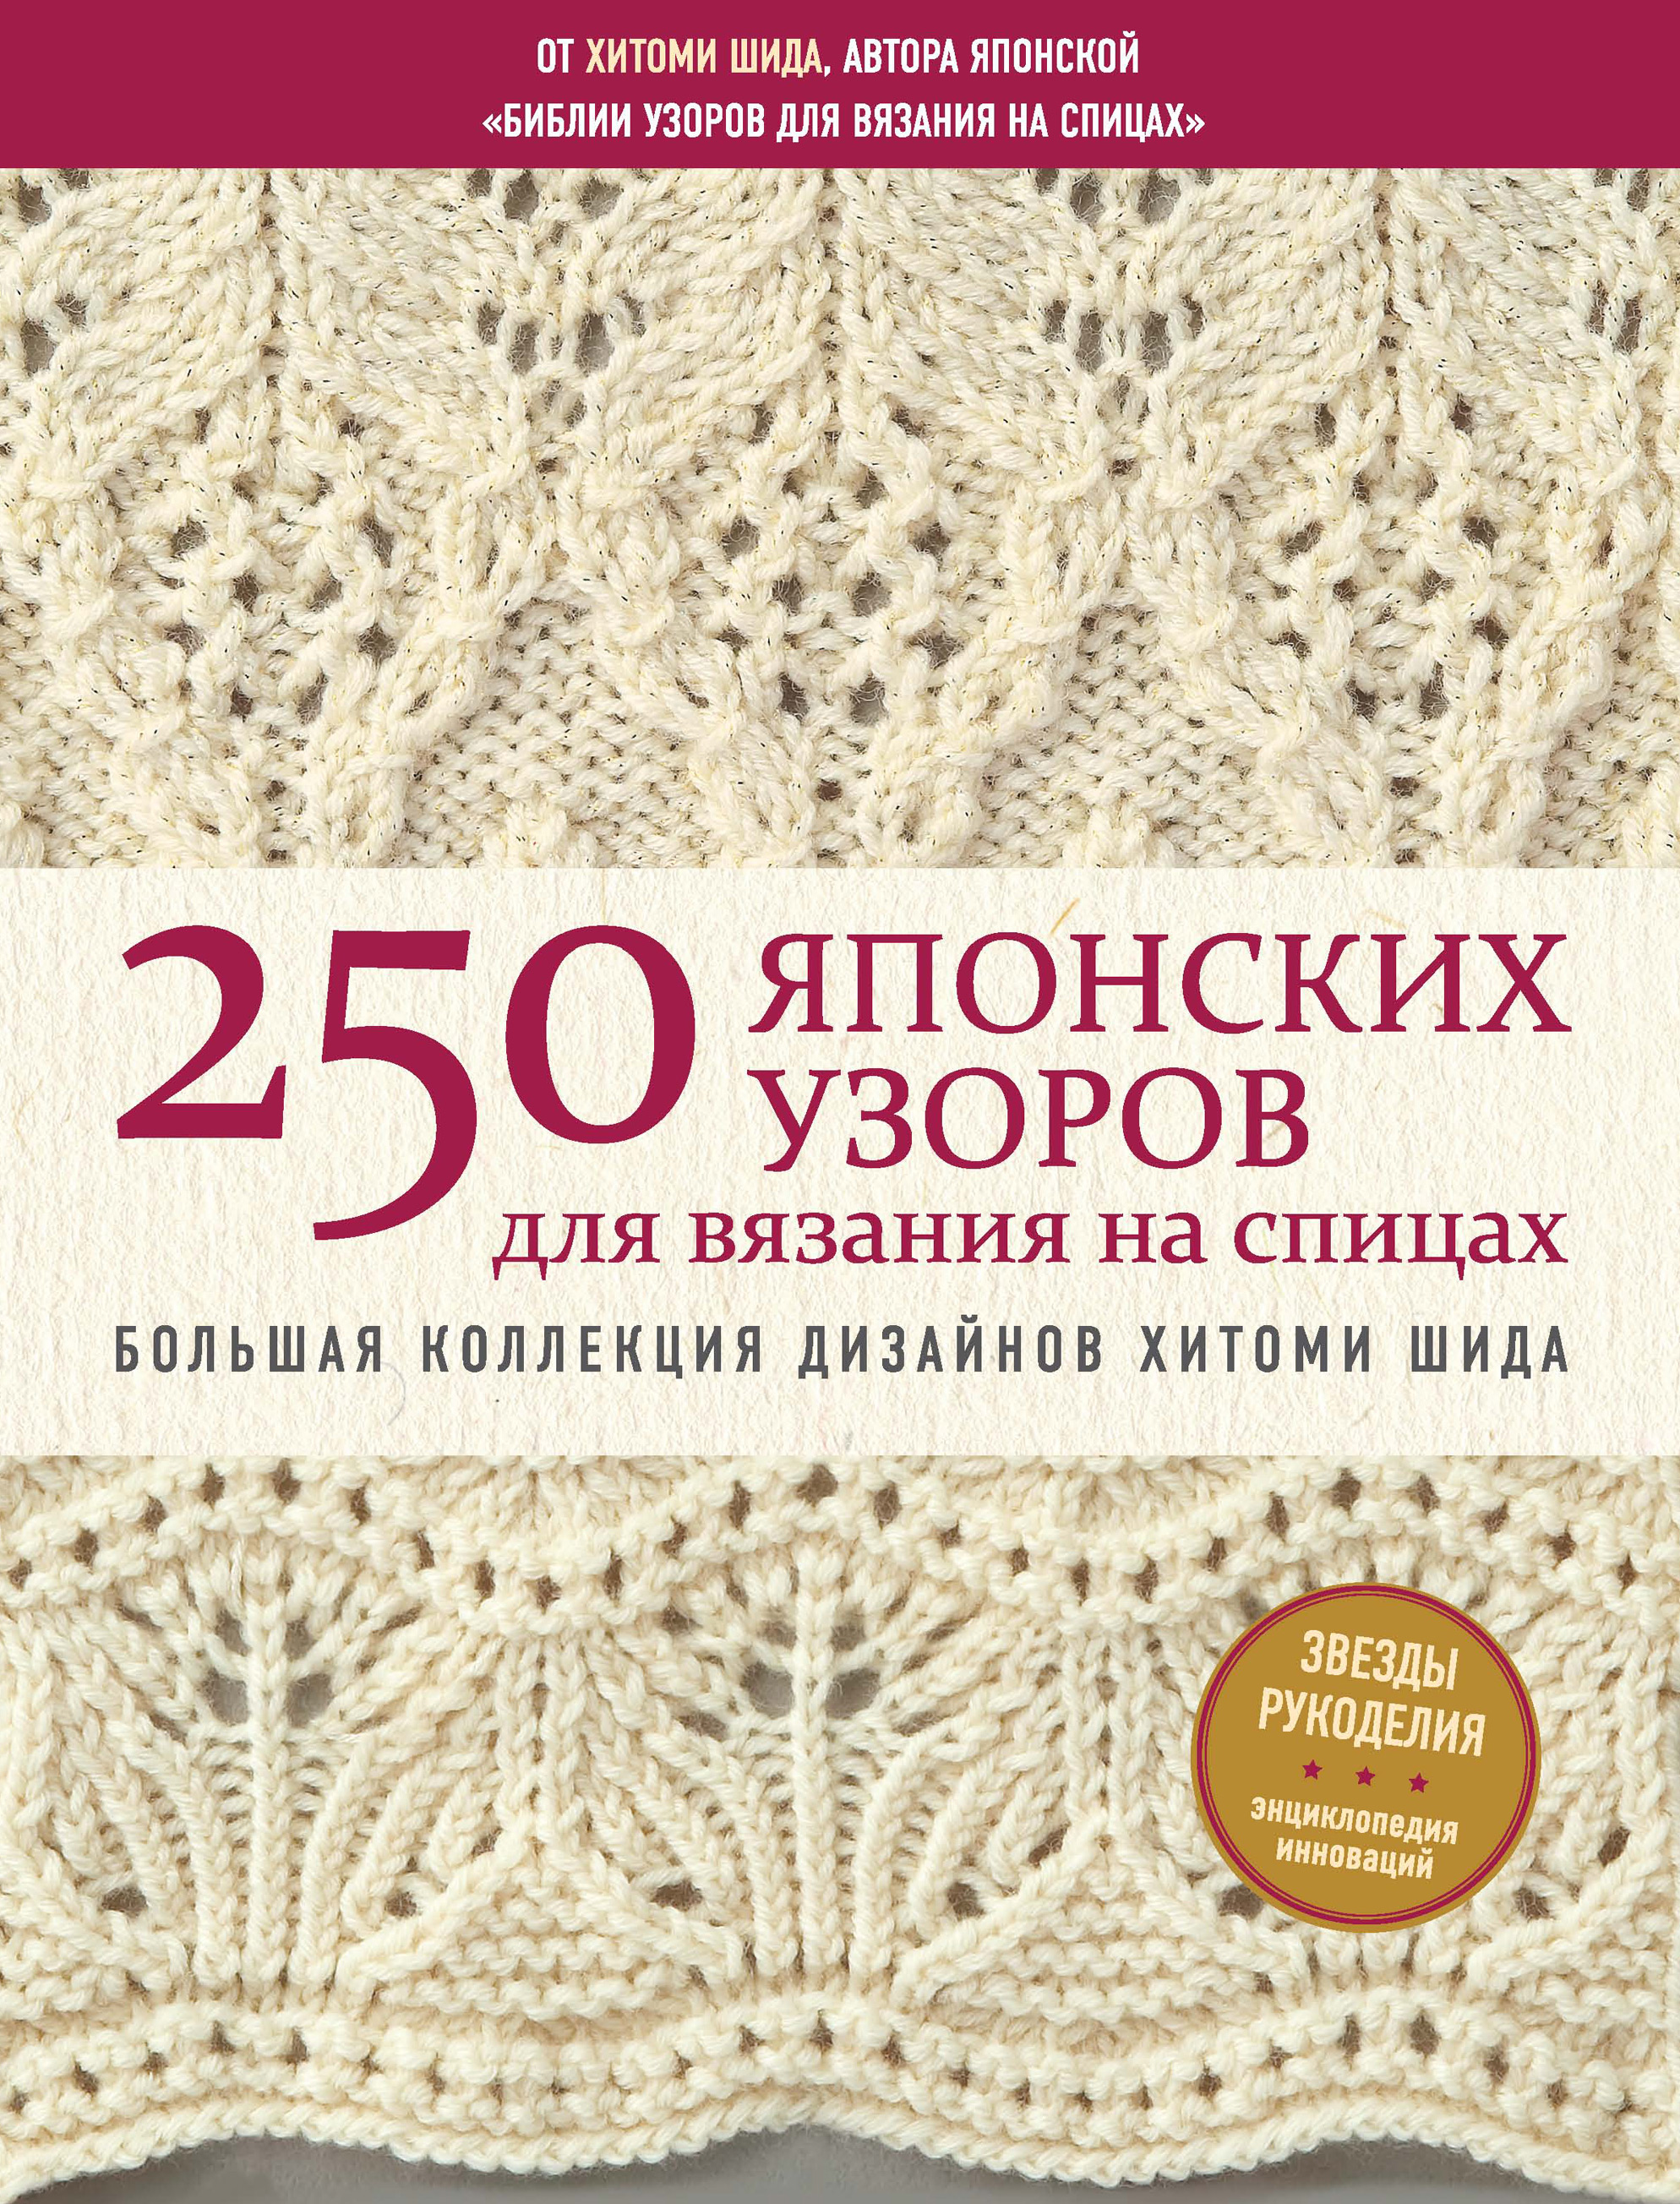 250японских узоров для вязания на спицах. Большая коллекция дизайнов Хитоми Шида. Библия вязания на спицах